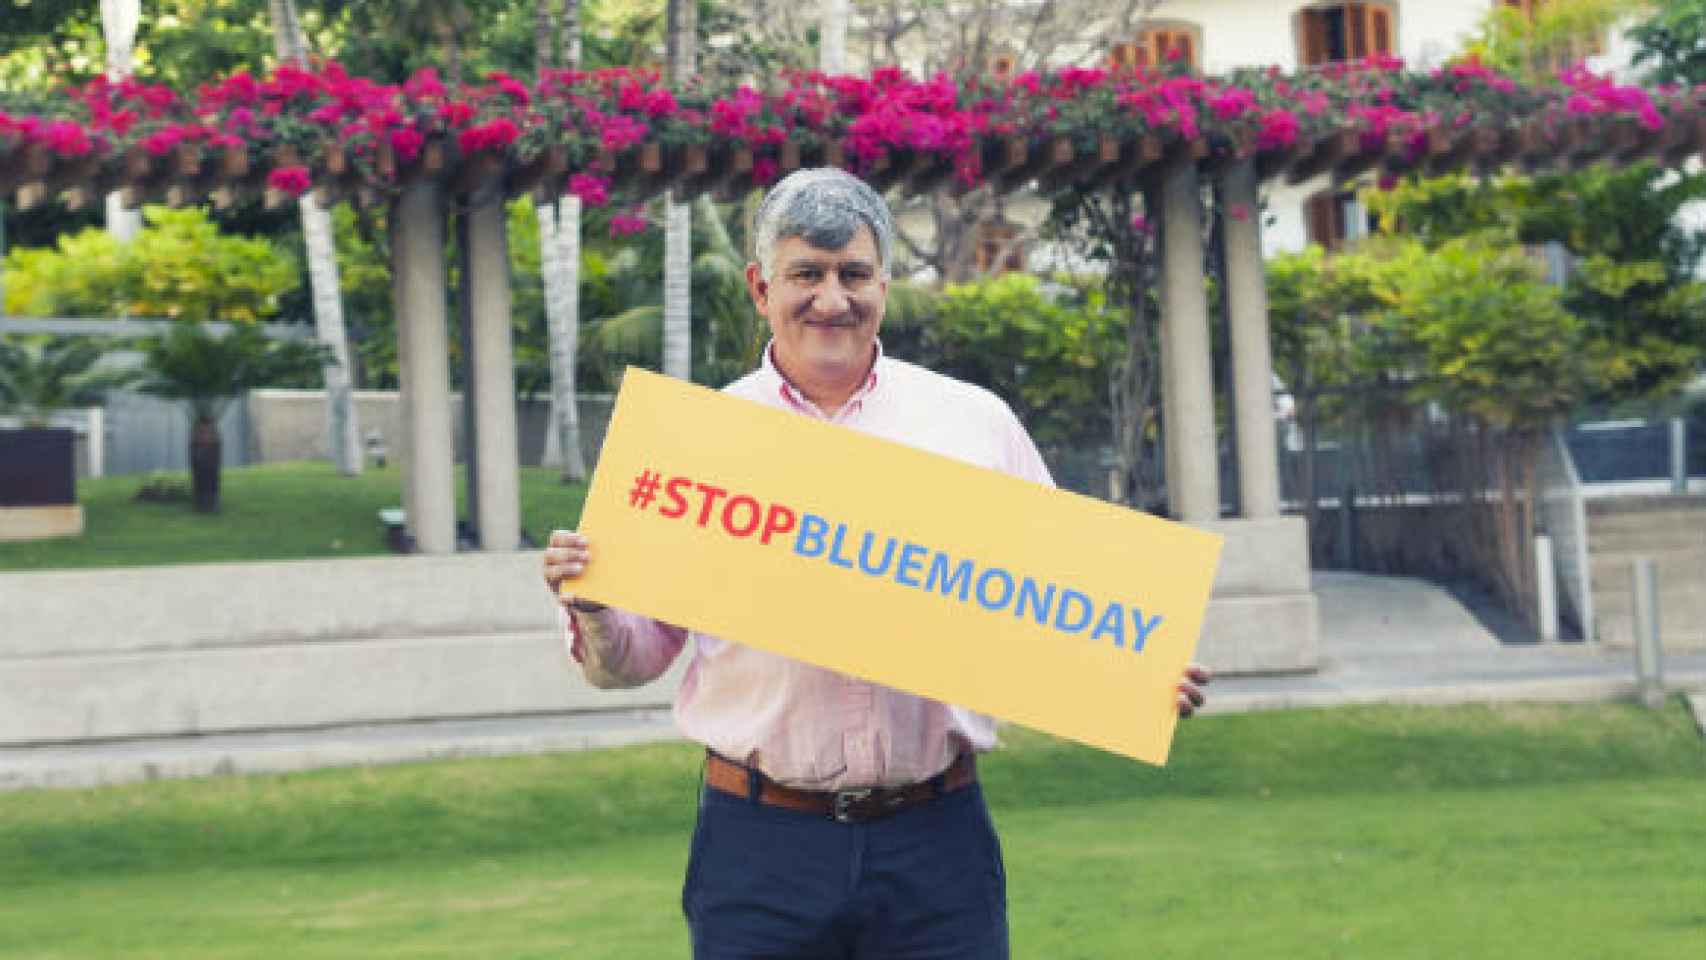 El anuncio de #stopbluemonday por Cliff Arnall.